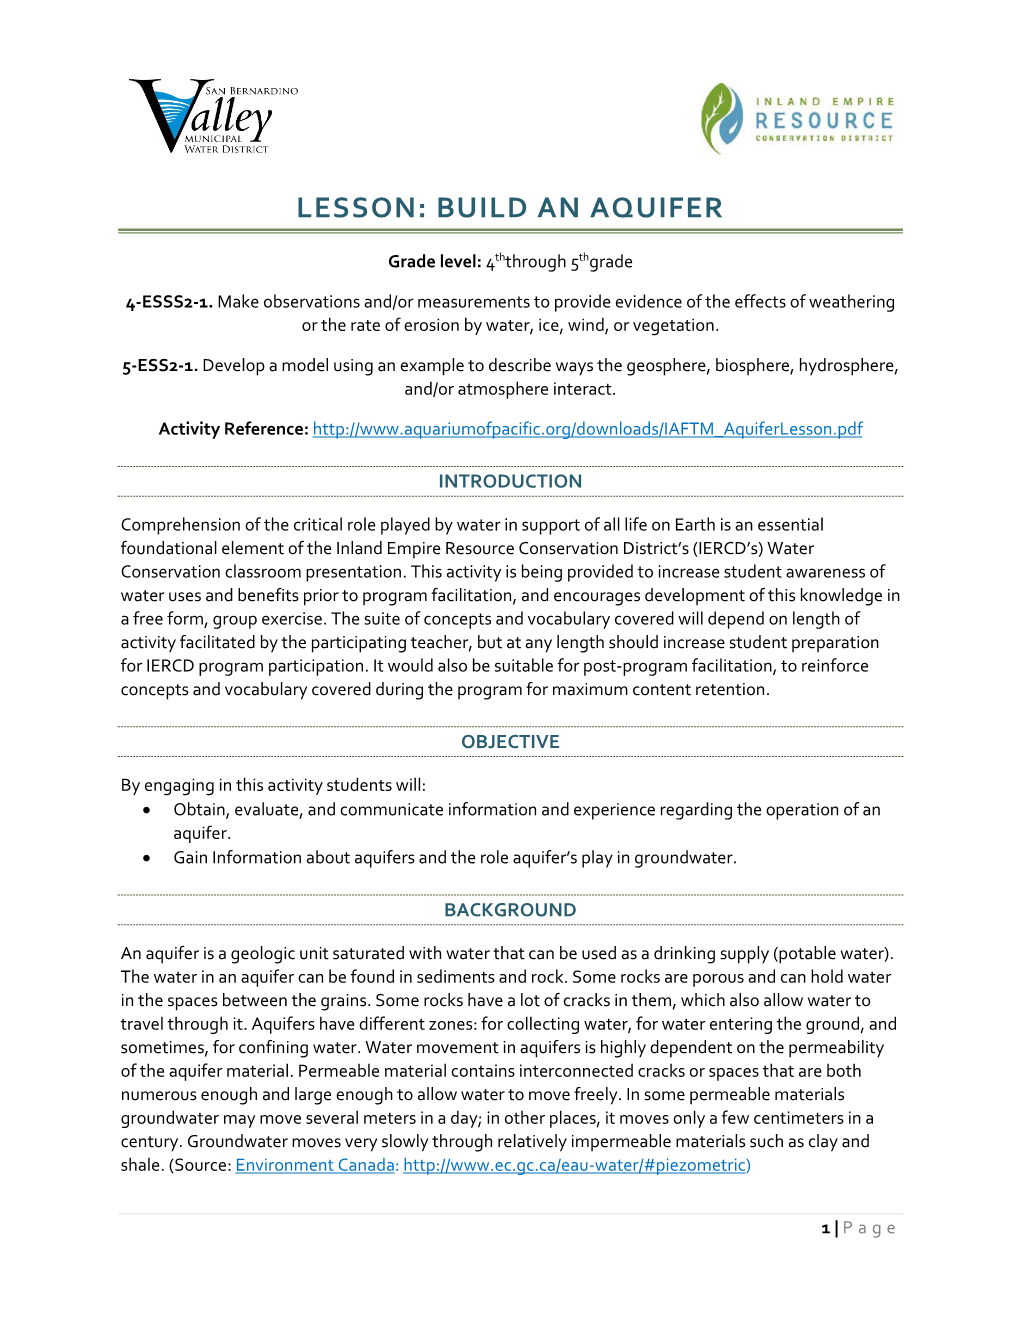 Lesson: Build an Aquifer